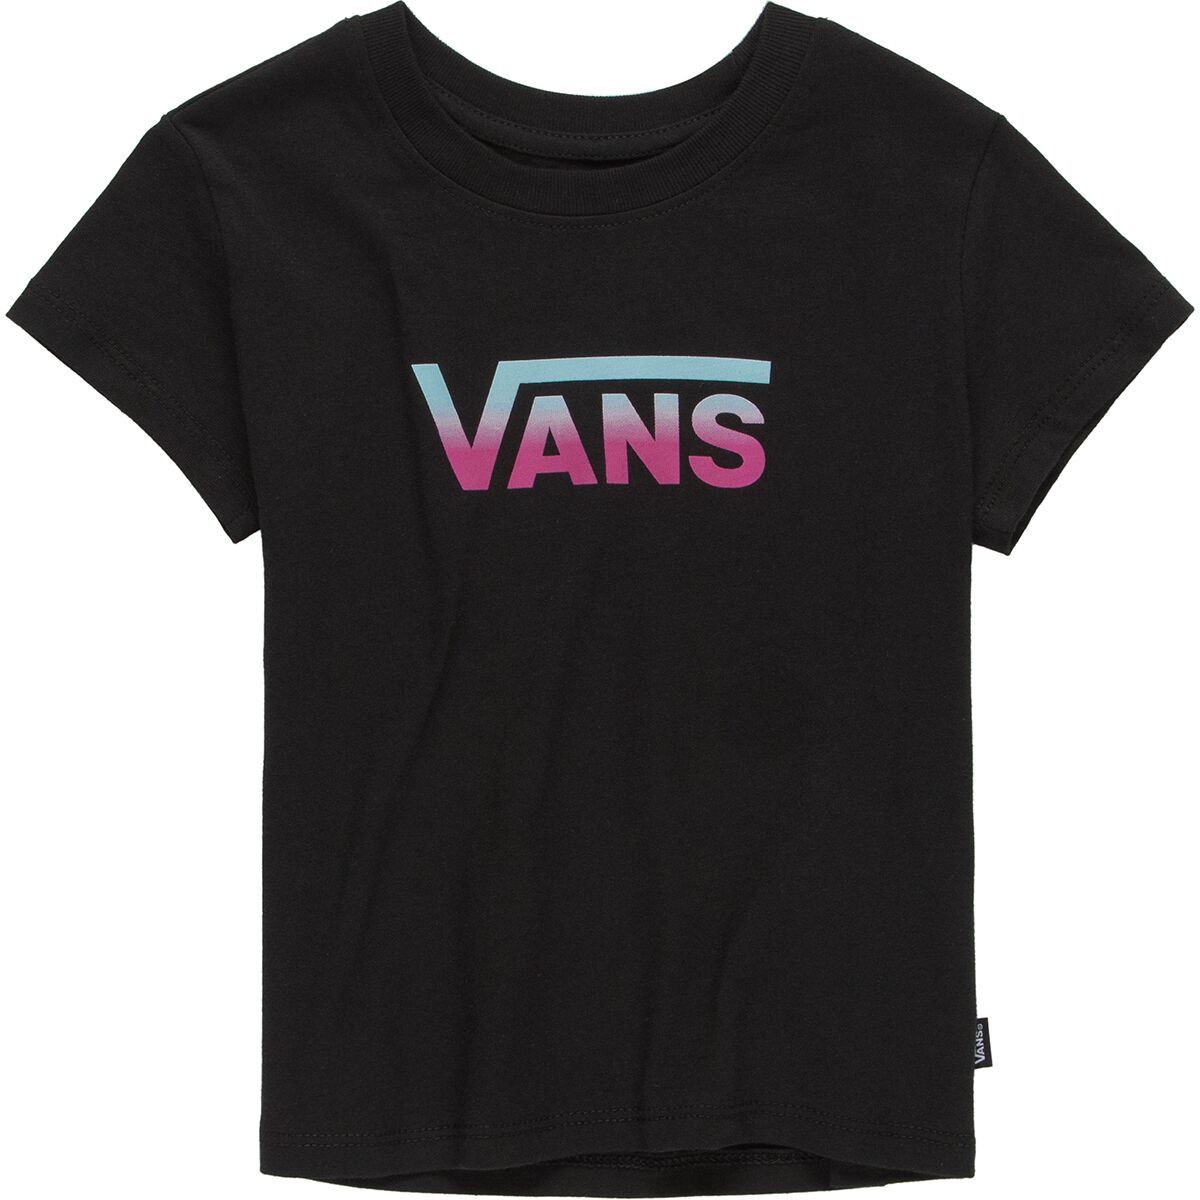 Vans Flying V Short-Sleeve Shirt - Toddler Girls'